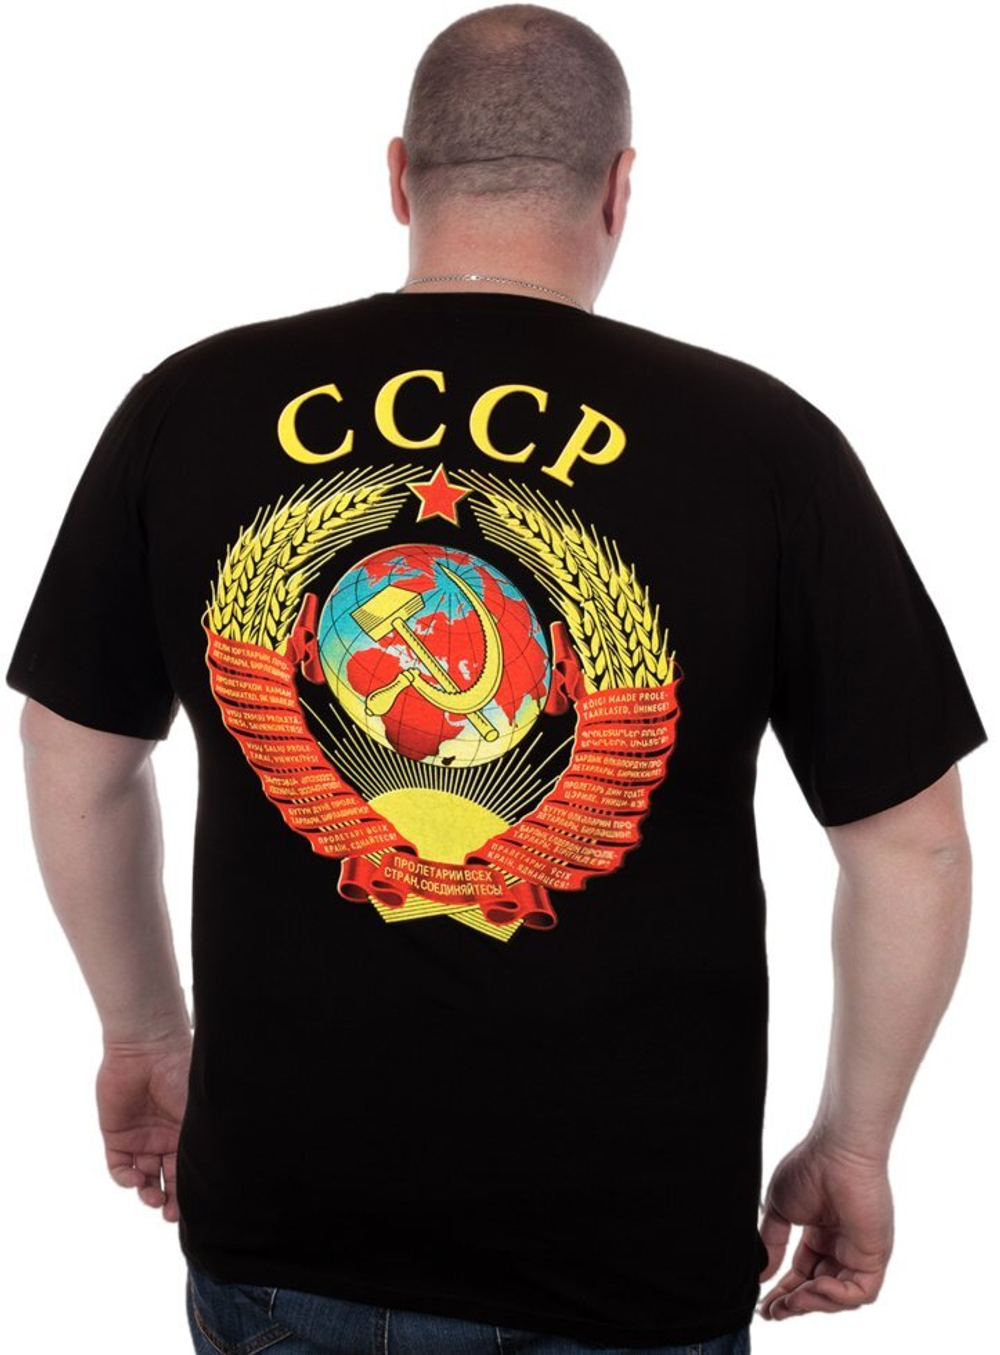 Качественная мужская футболка с большим гербом СССР